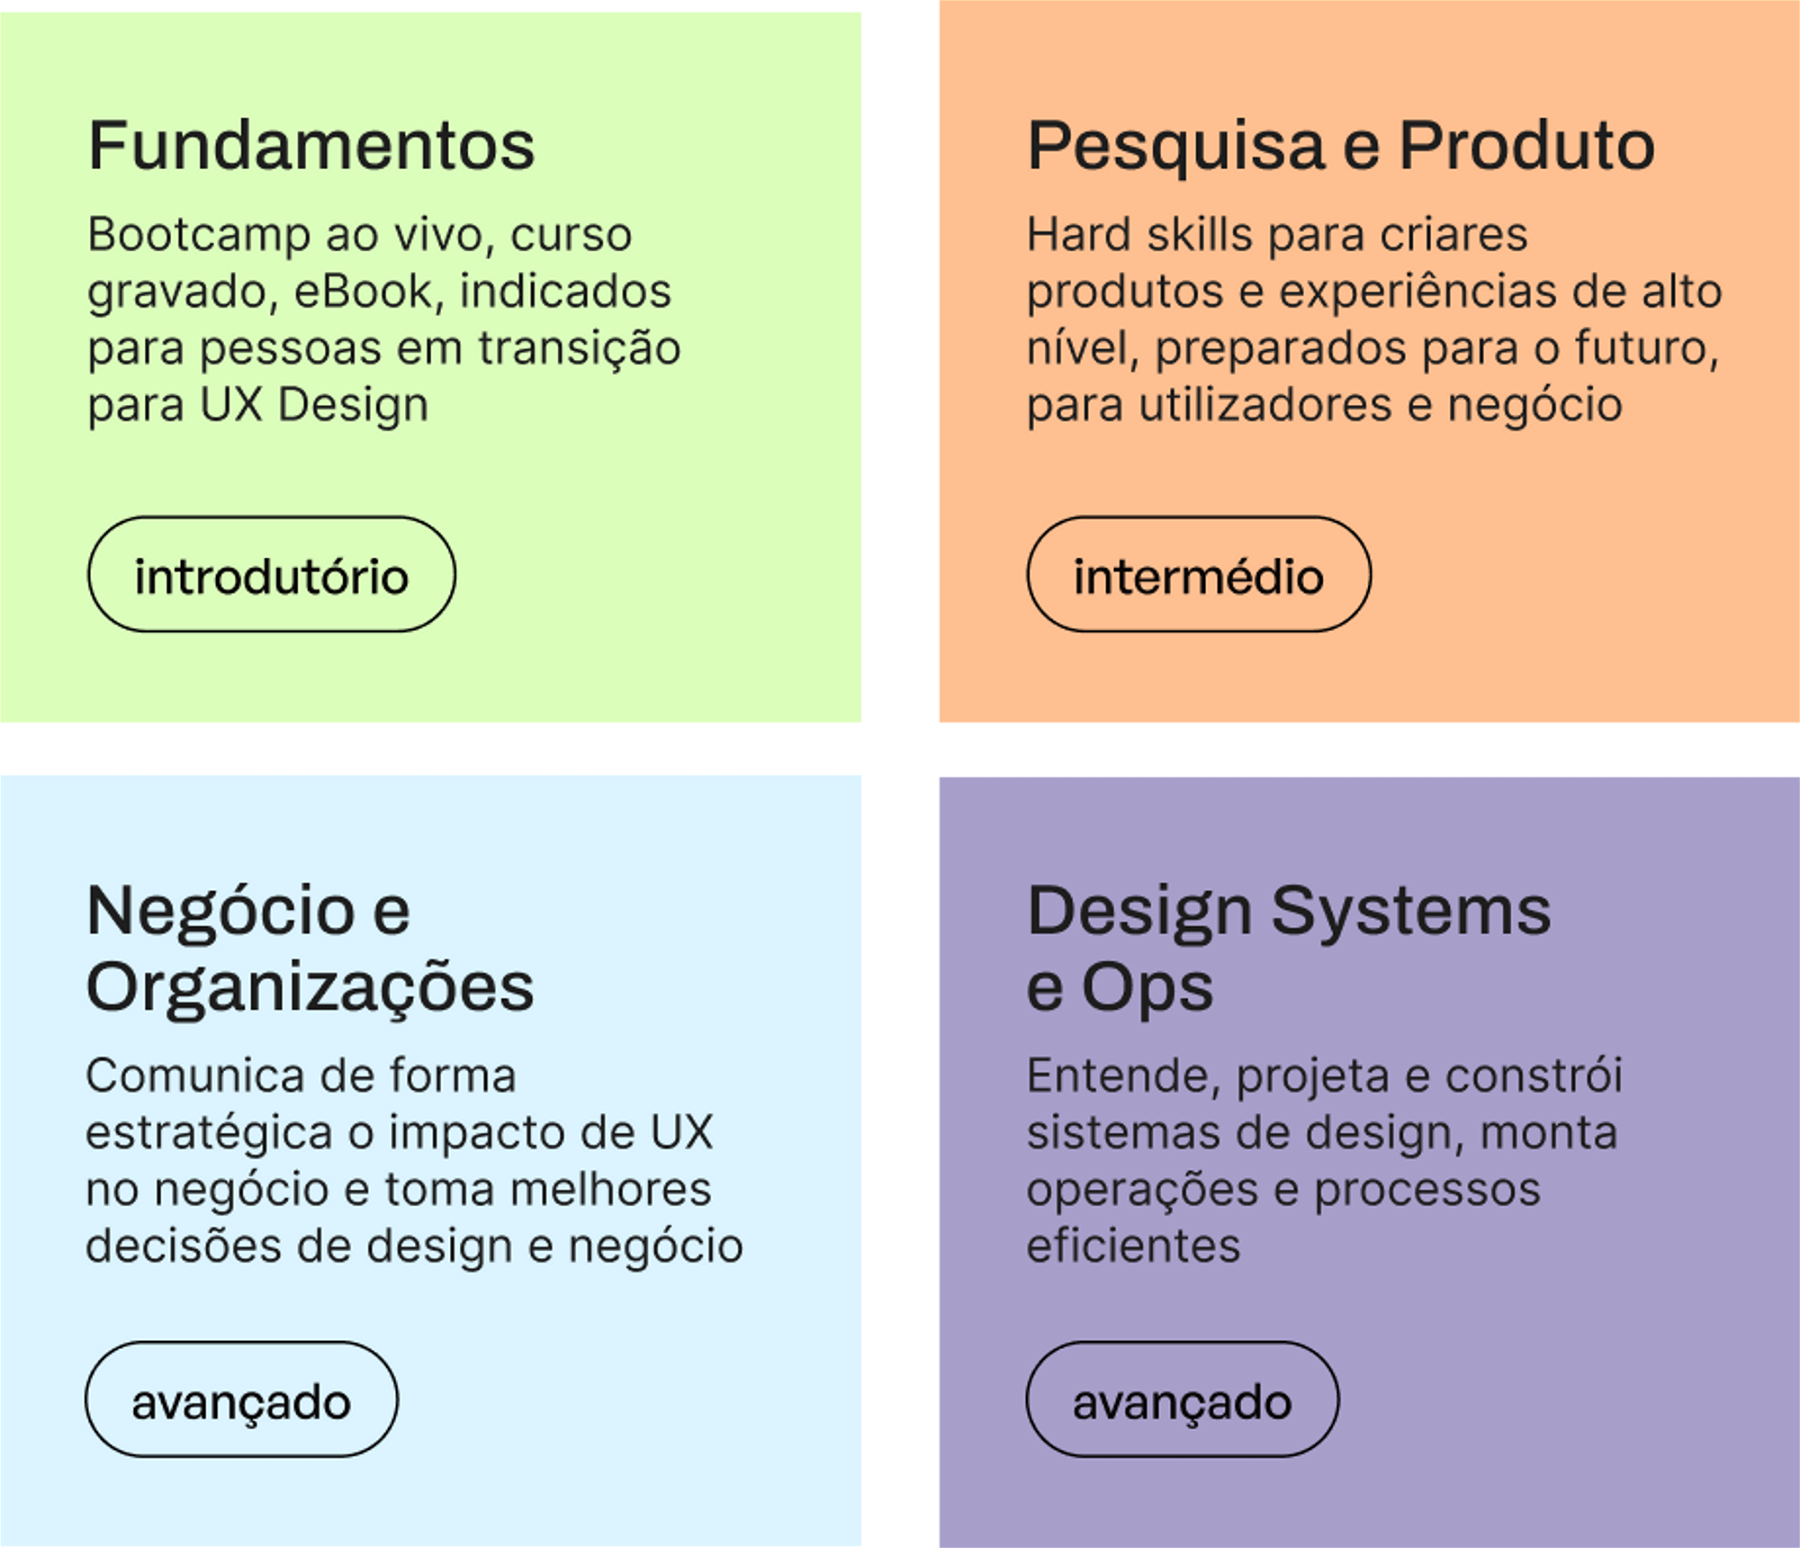 Trilhas de Aprendizagem da TheStarter: Fundamentos, Pesquisa e Produto, Negócio e Organizações, Design Systems e Ops